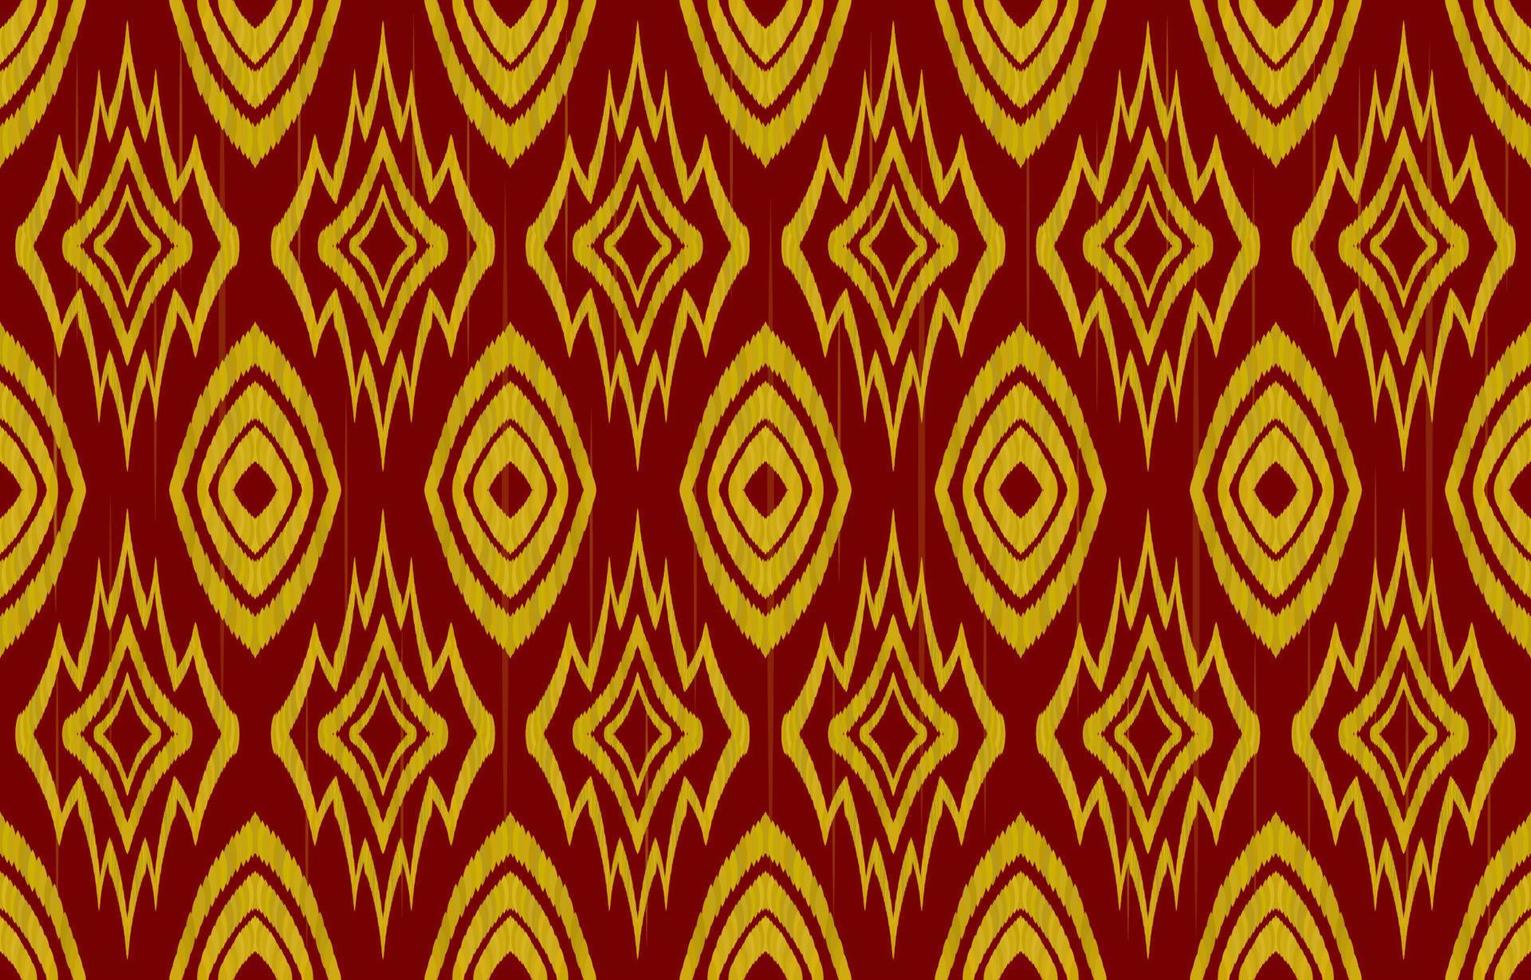 motif harmonieux de tissu doré orné ethnique ikat sur fond rouge. style rétro vintage géométrique tribal indien navajo aztèque. conception vectorielle pour décorer la toile de fond, la texture sans fin, le tissu, le textile. vecteur